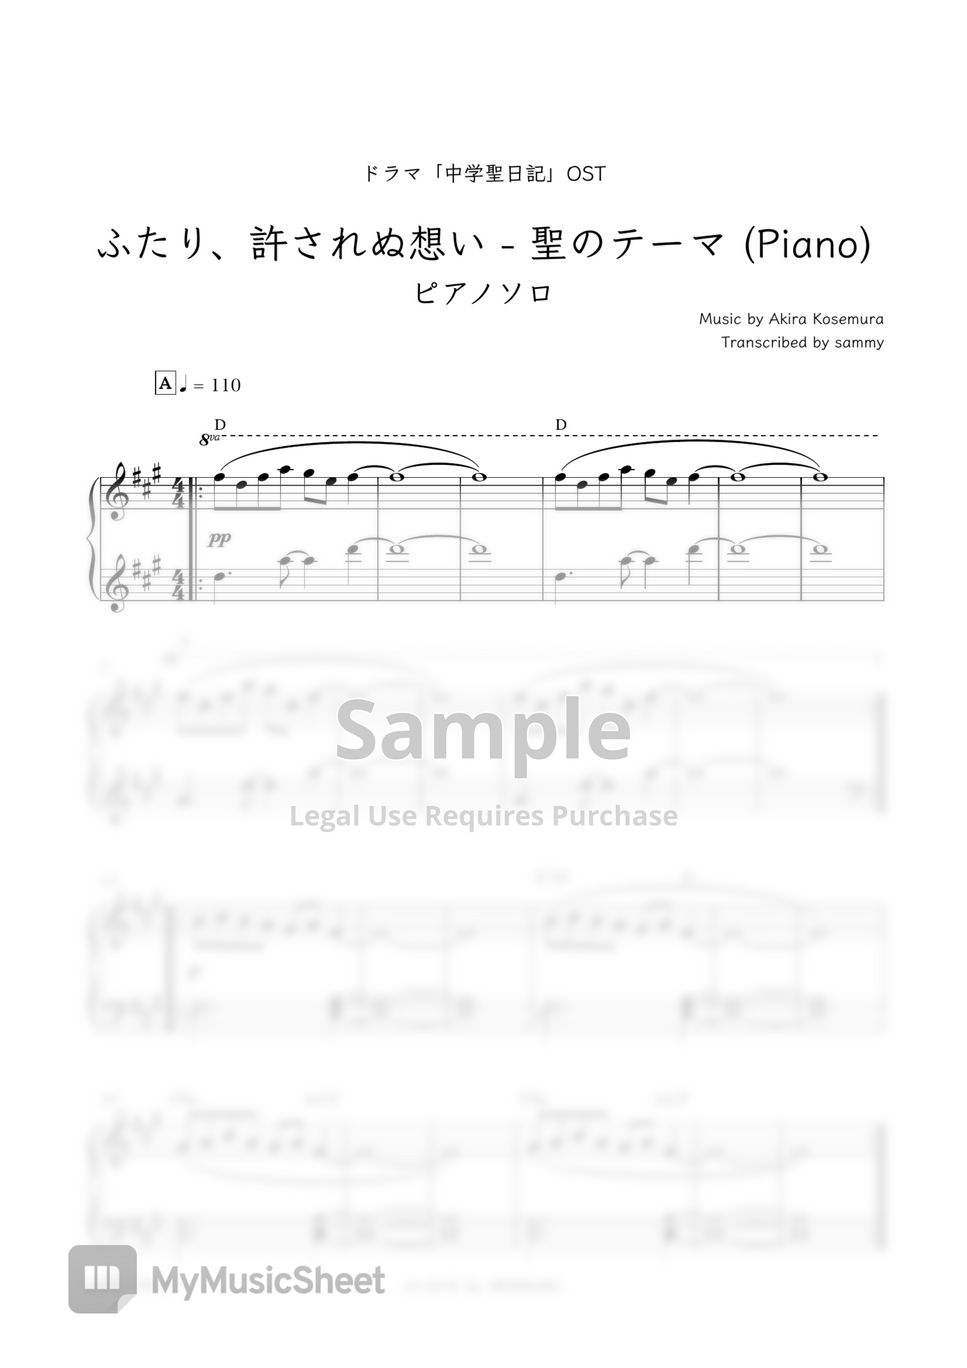 Japanese Drama "Chūgakusei Nikki(中学聖日記)" OST - Futari, Yurusarenu Omoi - Hijiri No Thema [Piano] (ふたり、許されぬ想い - 聖のテーマ [Piano]) by sammy